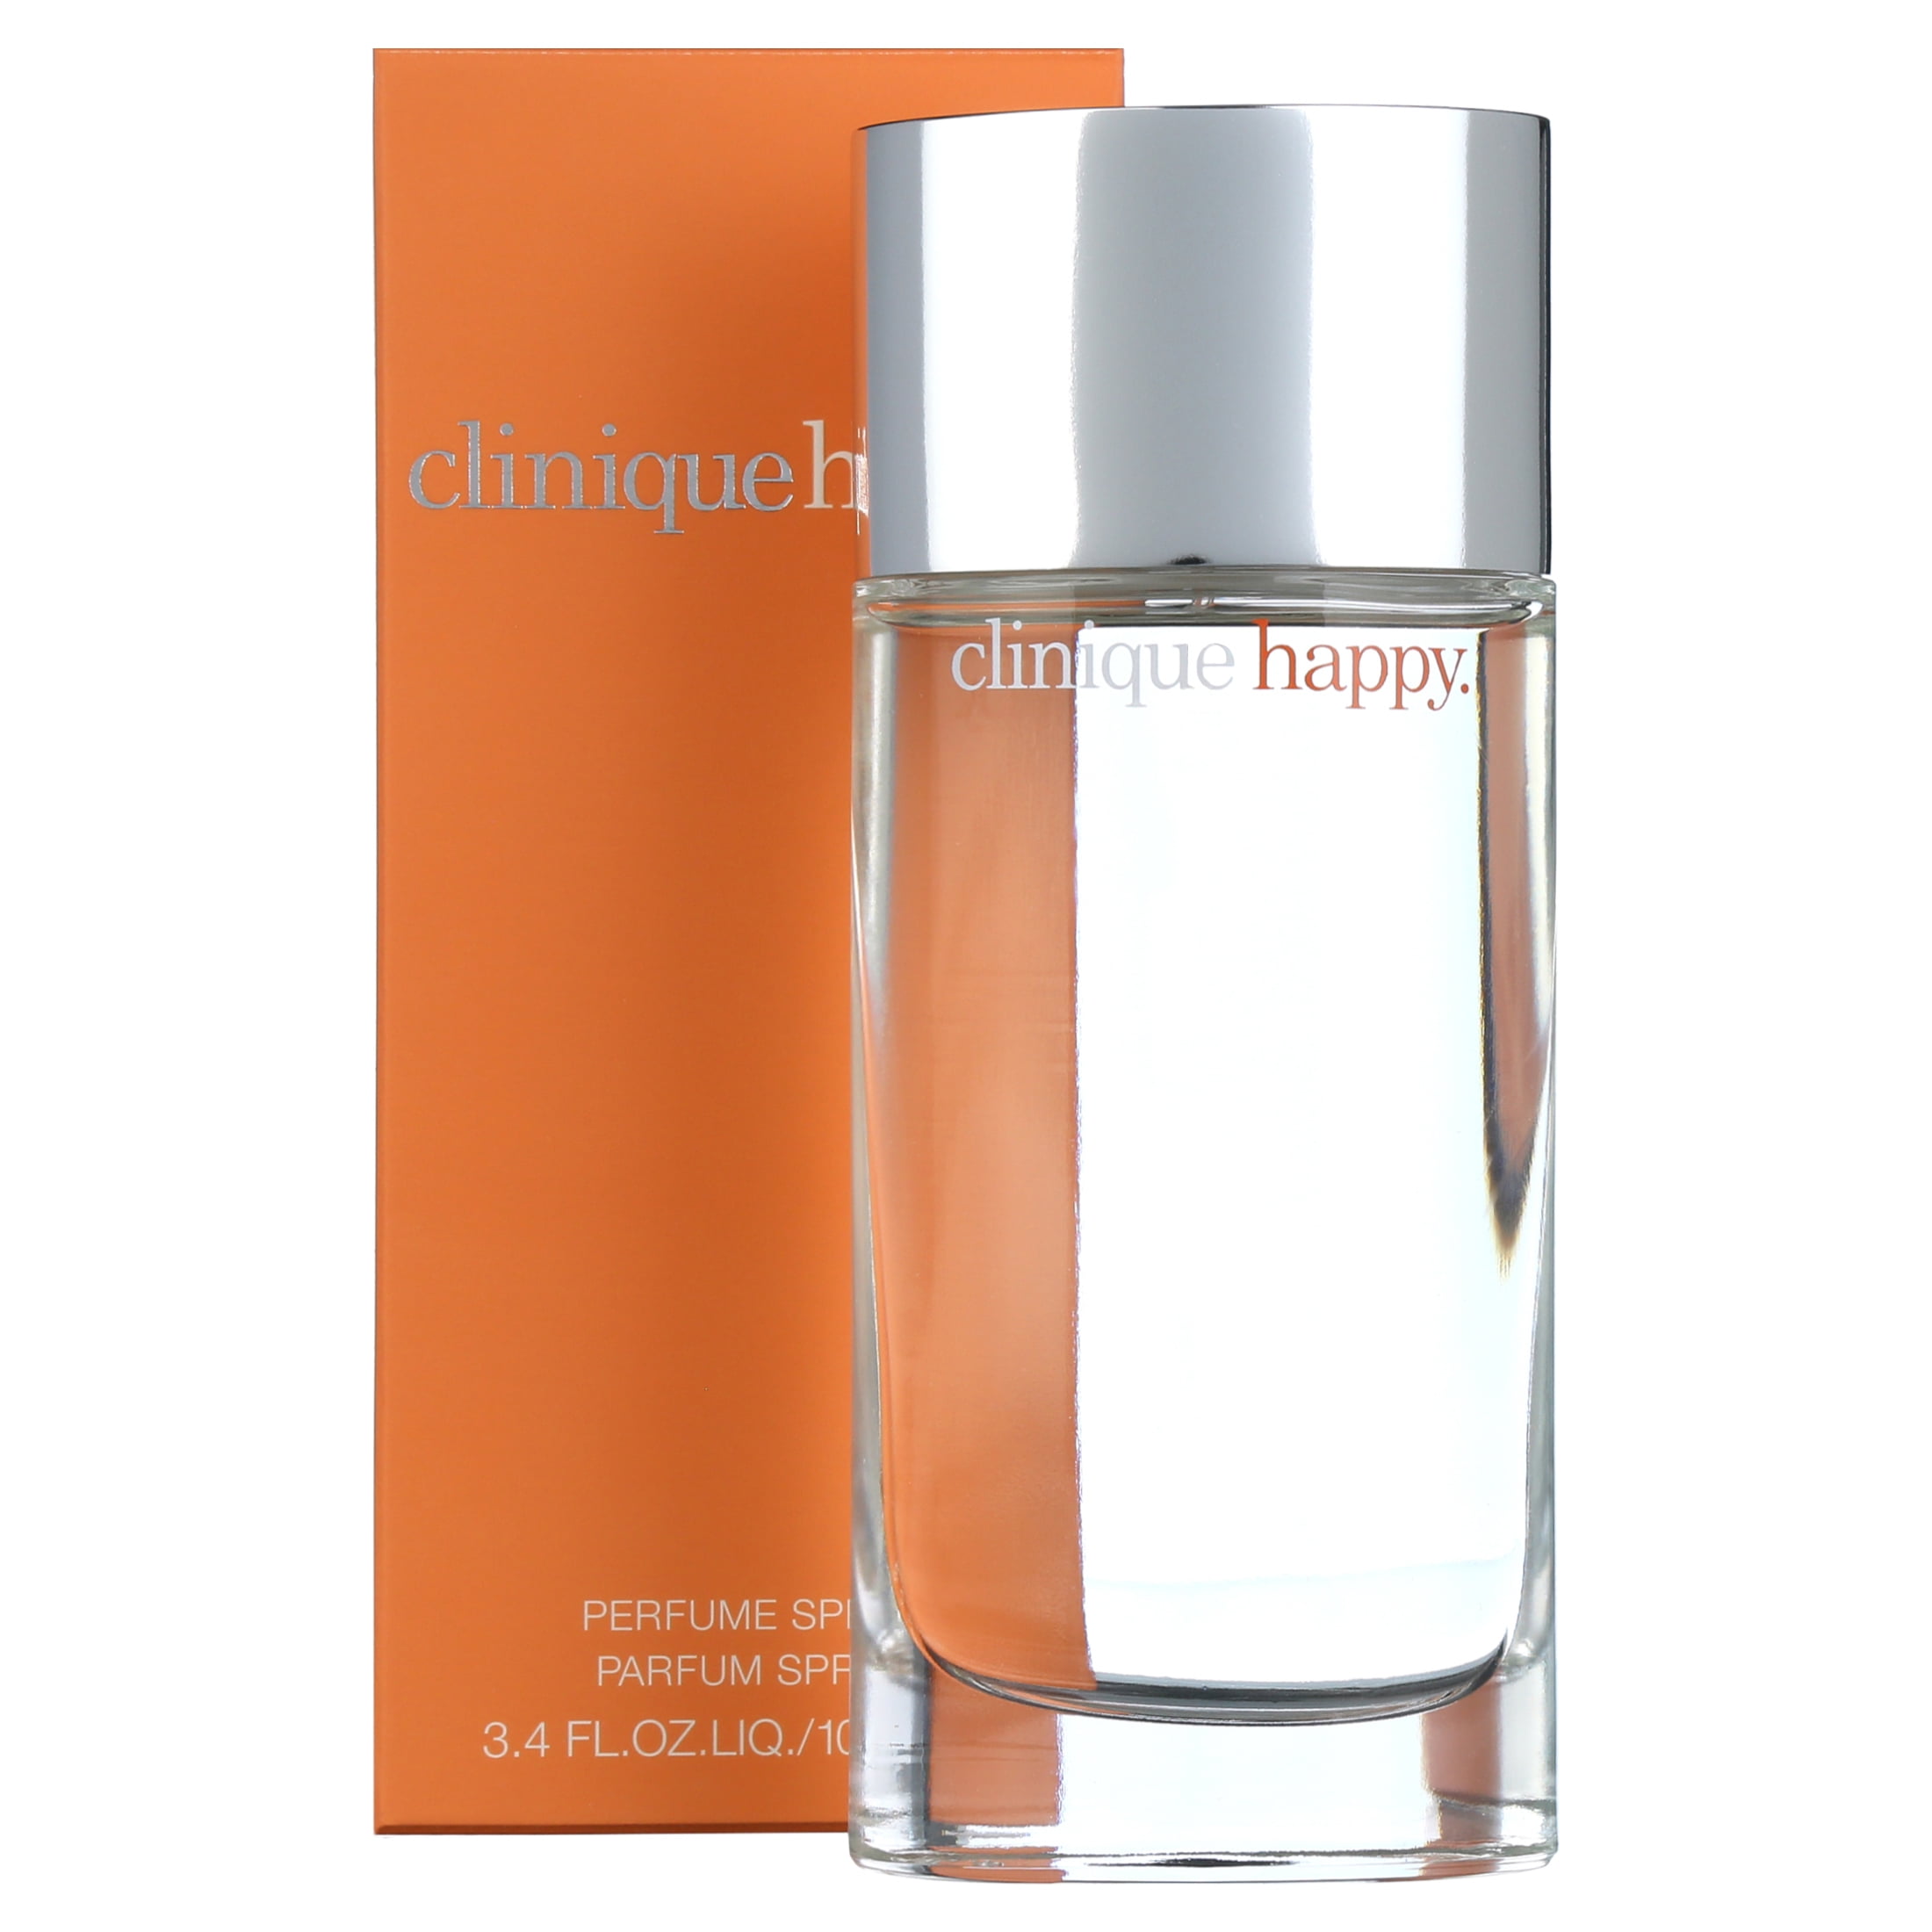 biografie statisch Verslijten Clinique Happy Eau de Parfum, Perfume for Women, 3.4 oz - Walmart.com